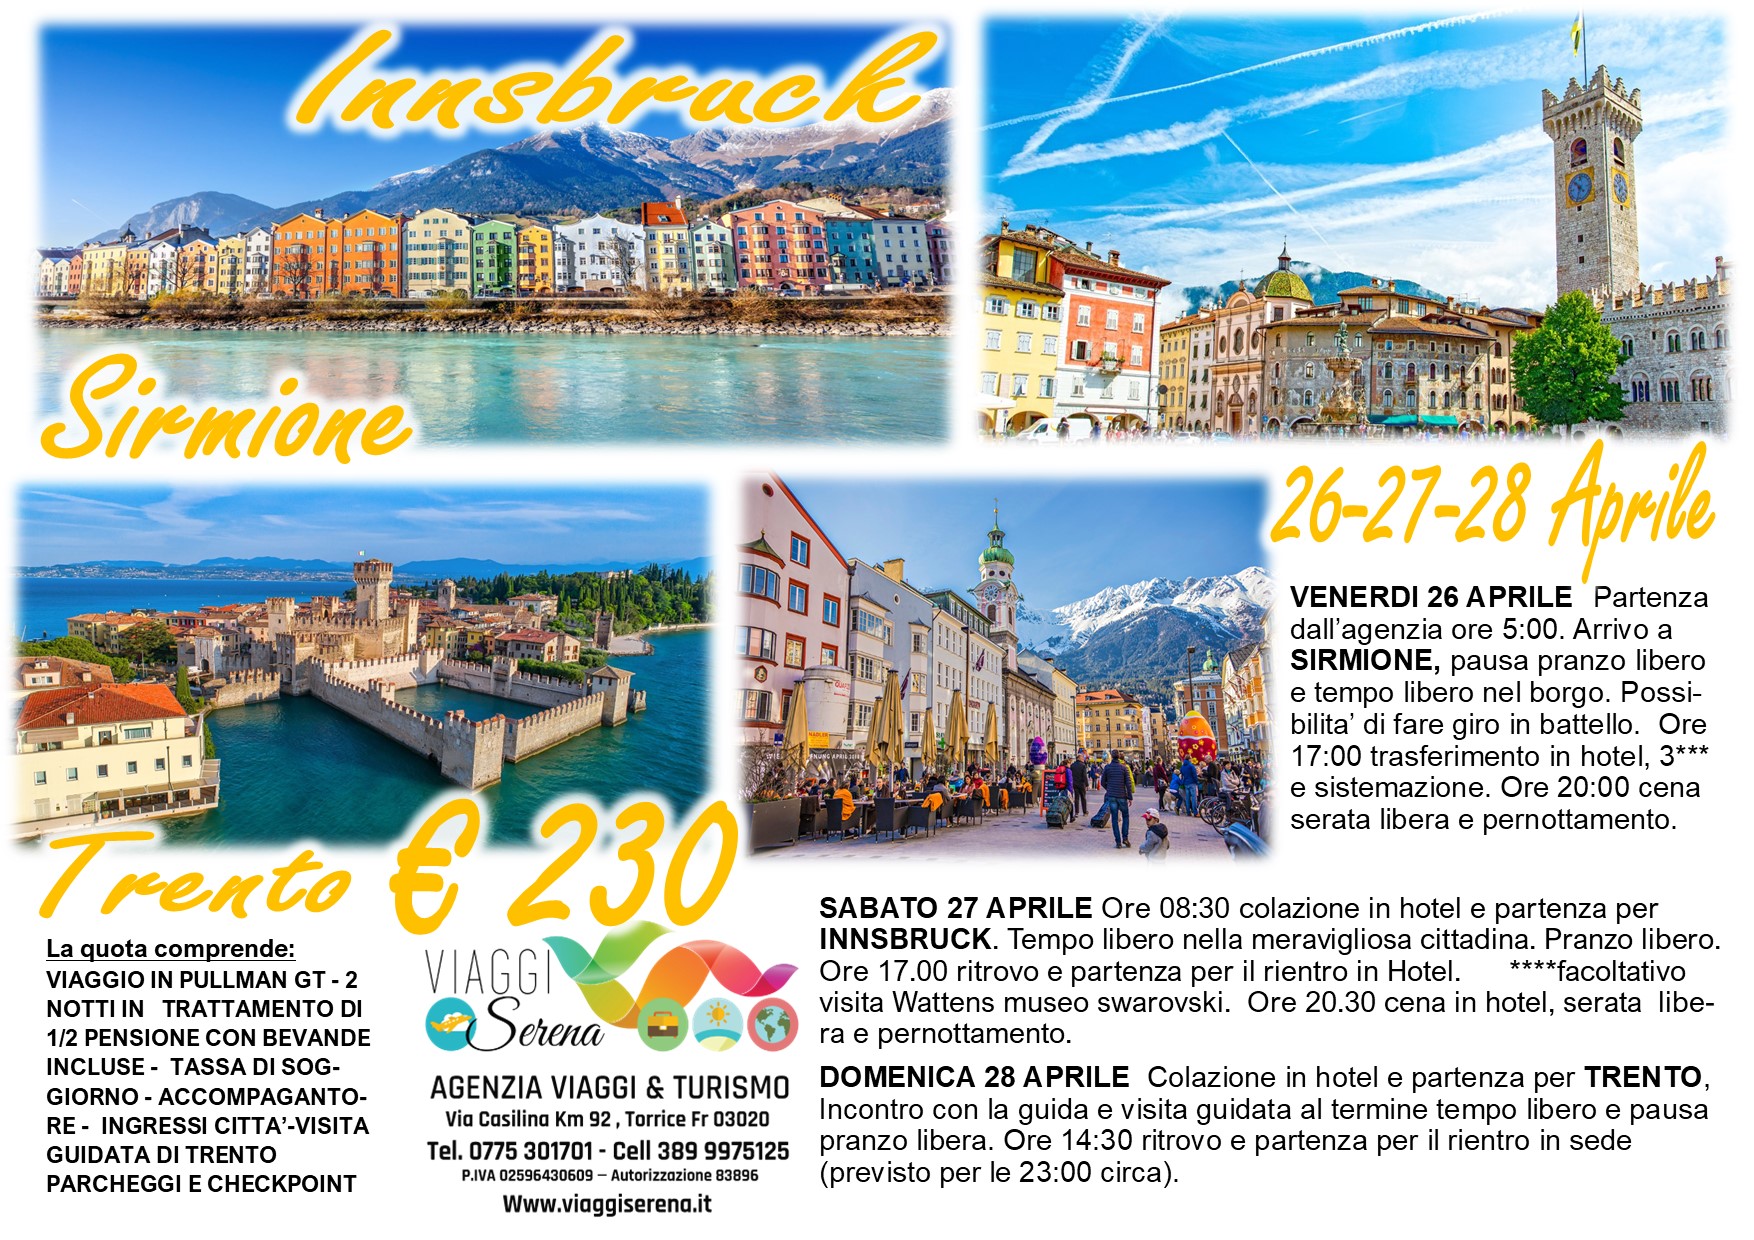 Viaggi di gruppo: Innsbruck, Trento e Sirmione 26-27-28 Aprile €230